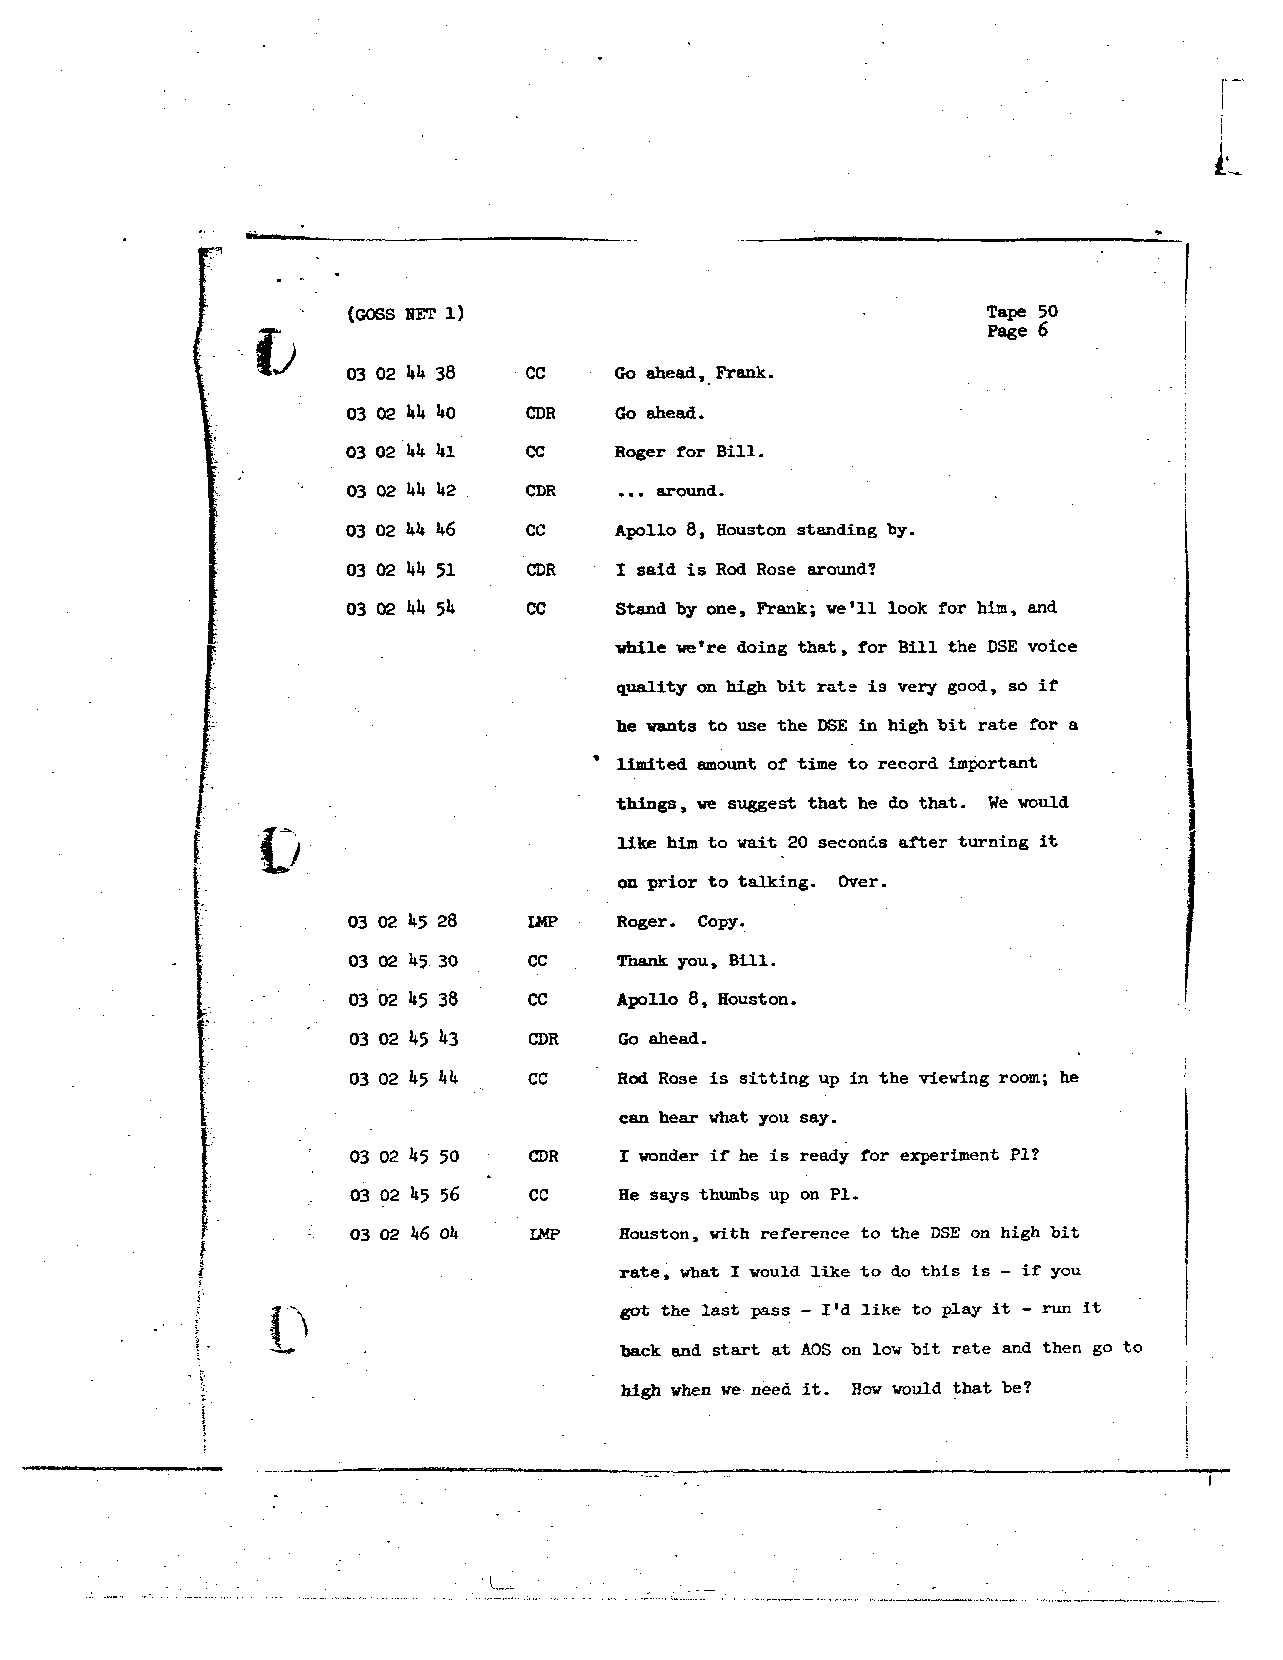 Page 398 of Apollo 8’s original transcript